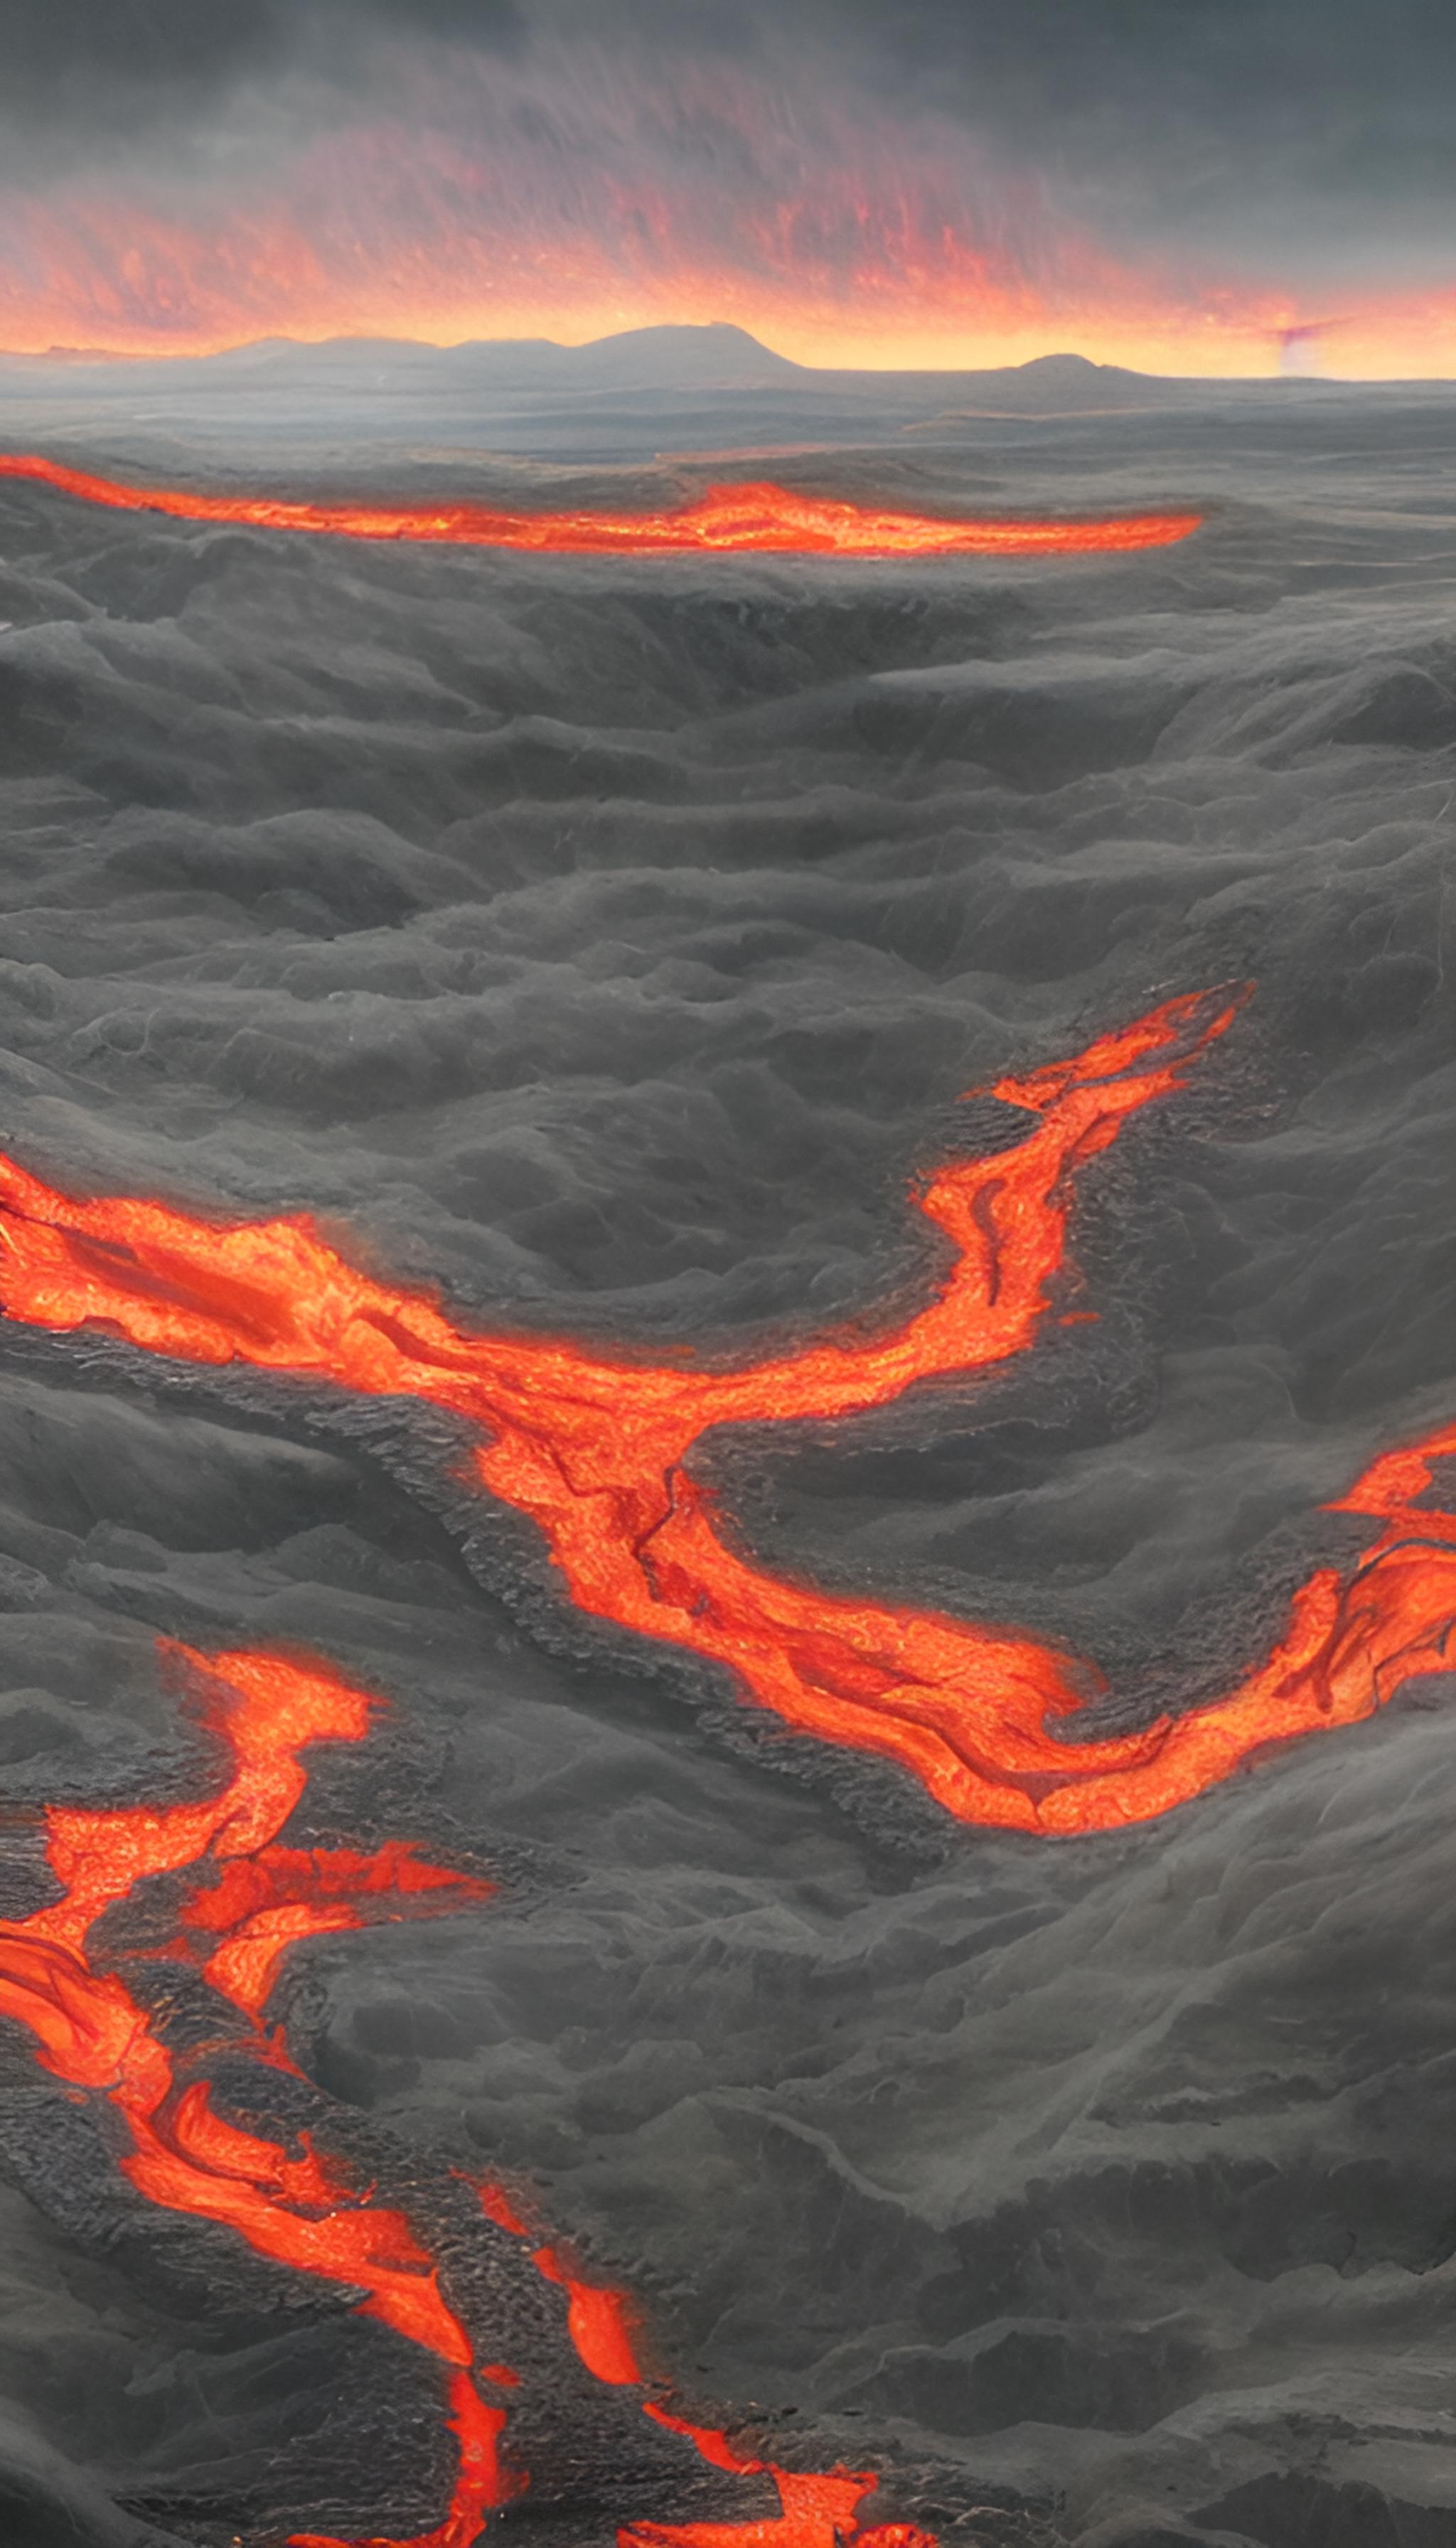 A river of lava